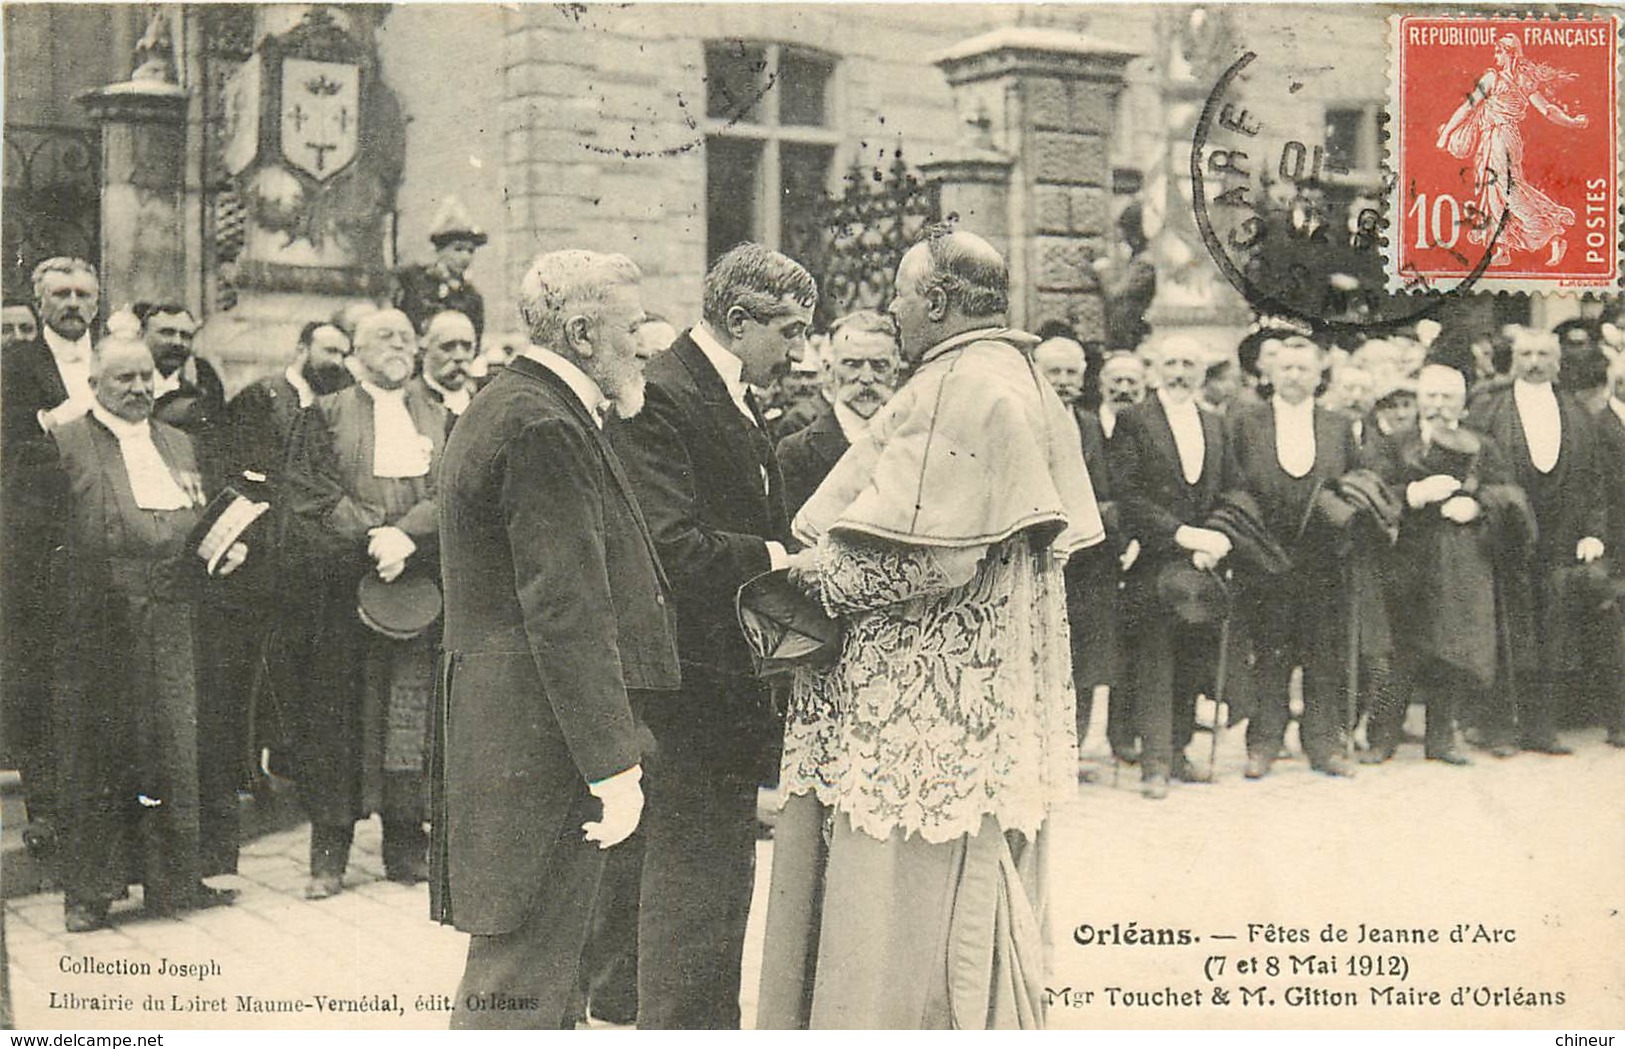 ORLEANS FETES DE JEANNE D'ARC 7 ET 8 MAI 1912 MGR TOUCHET ET MR GITTON MAIRE D'ORLEANS - Orleans